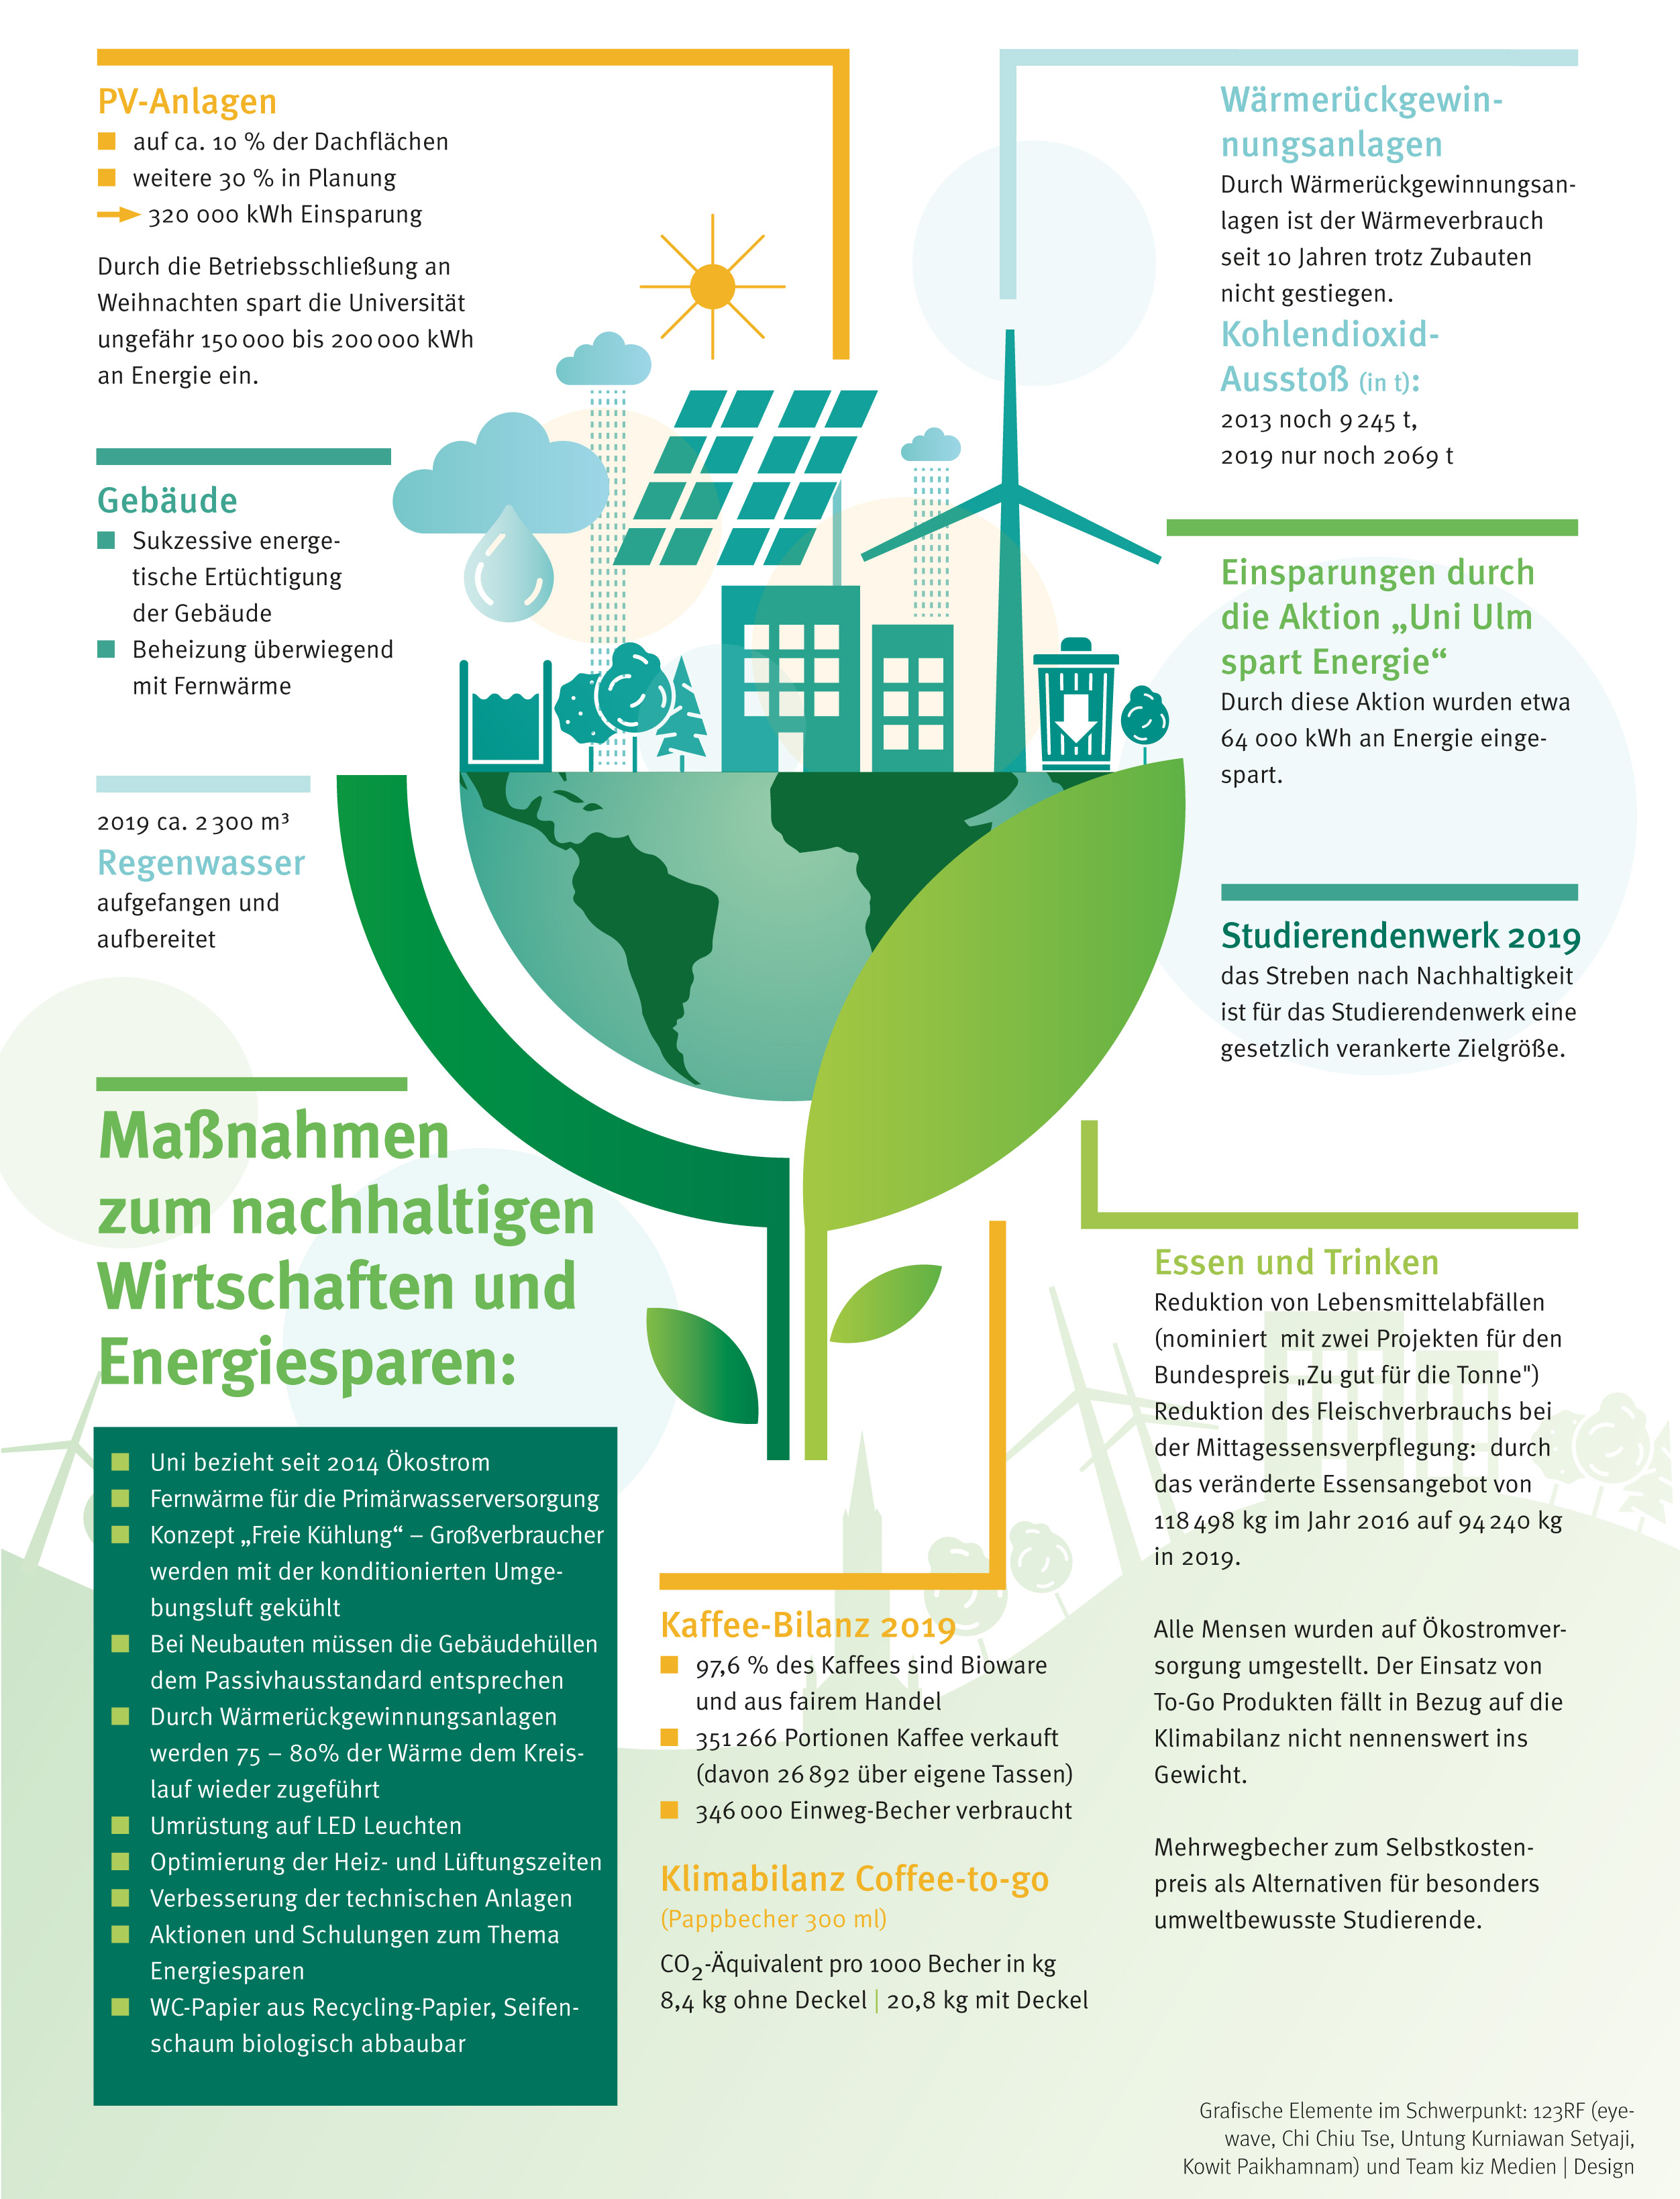 Maßnahmen zum nachhaltigen Wirtschaften und Energieparen an der Universität Ulm